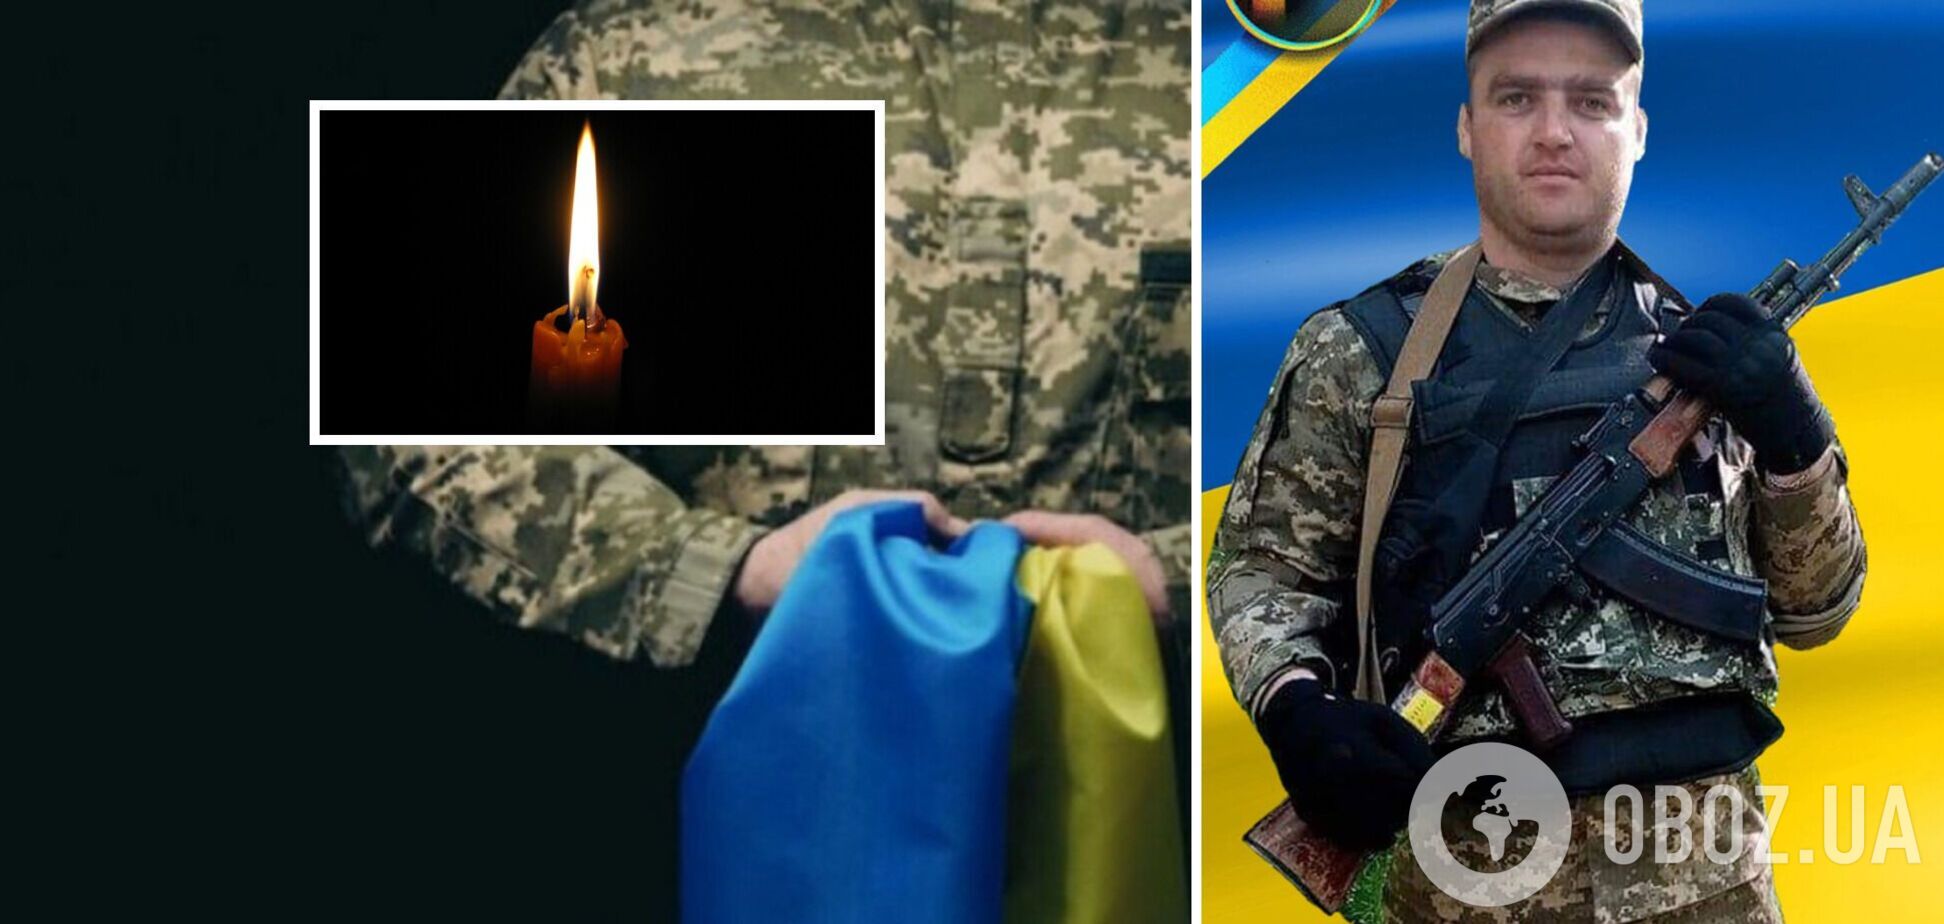 'Отдал свою жизнь за будущее Украины': на фронте погиб Олег Островец из Ривненской области. Фото